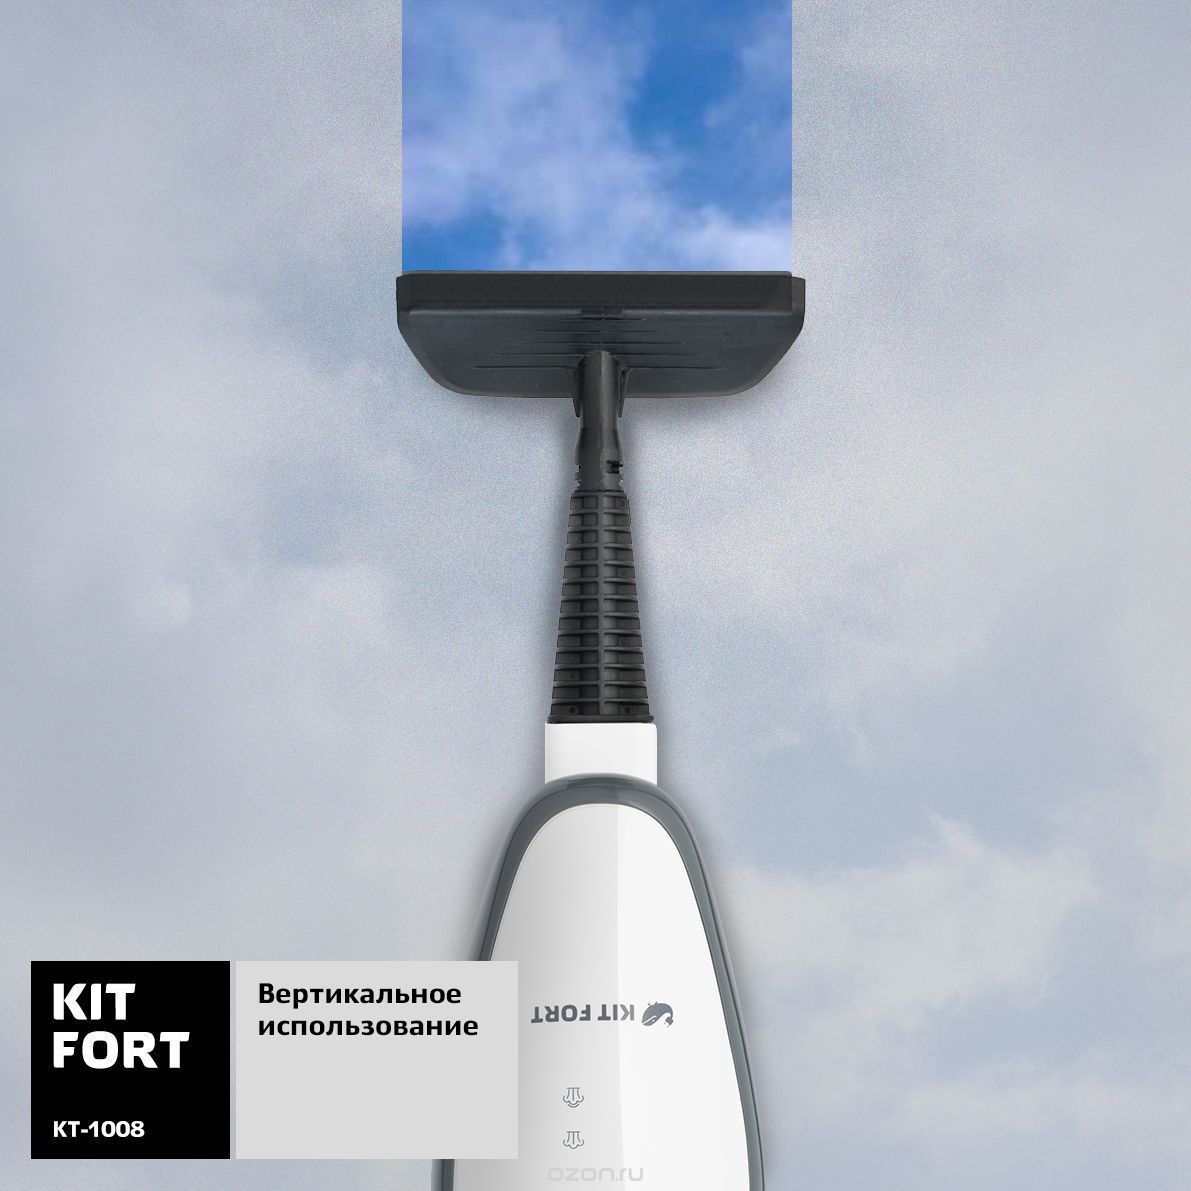  Kitfort -1008, White Gray